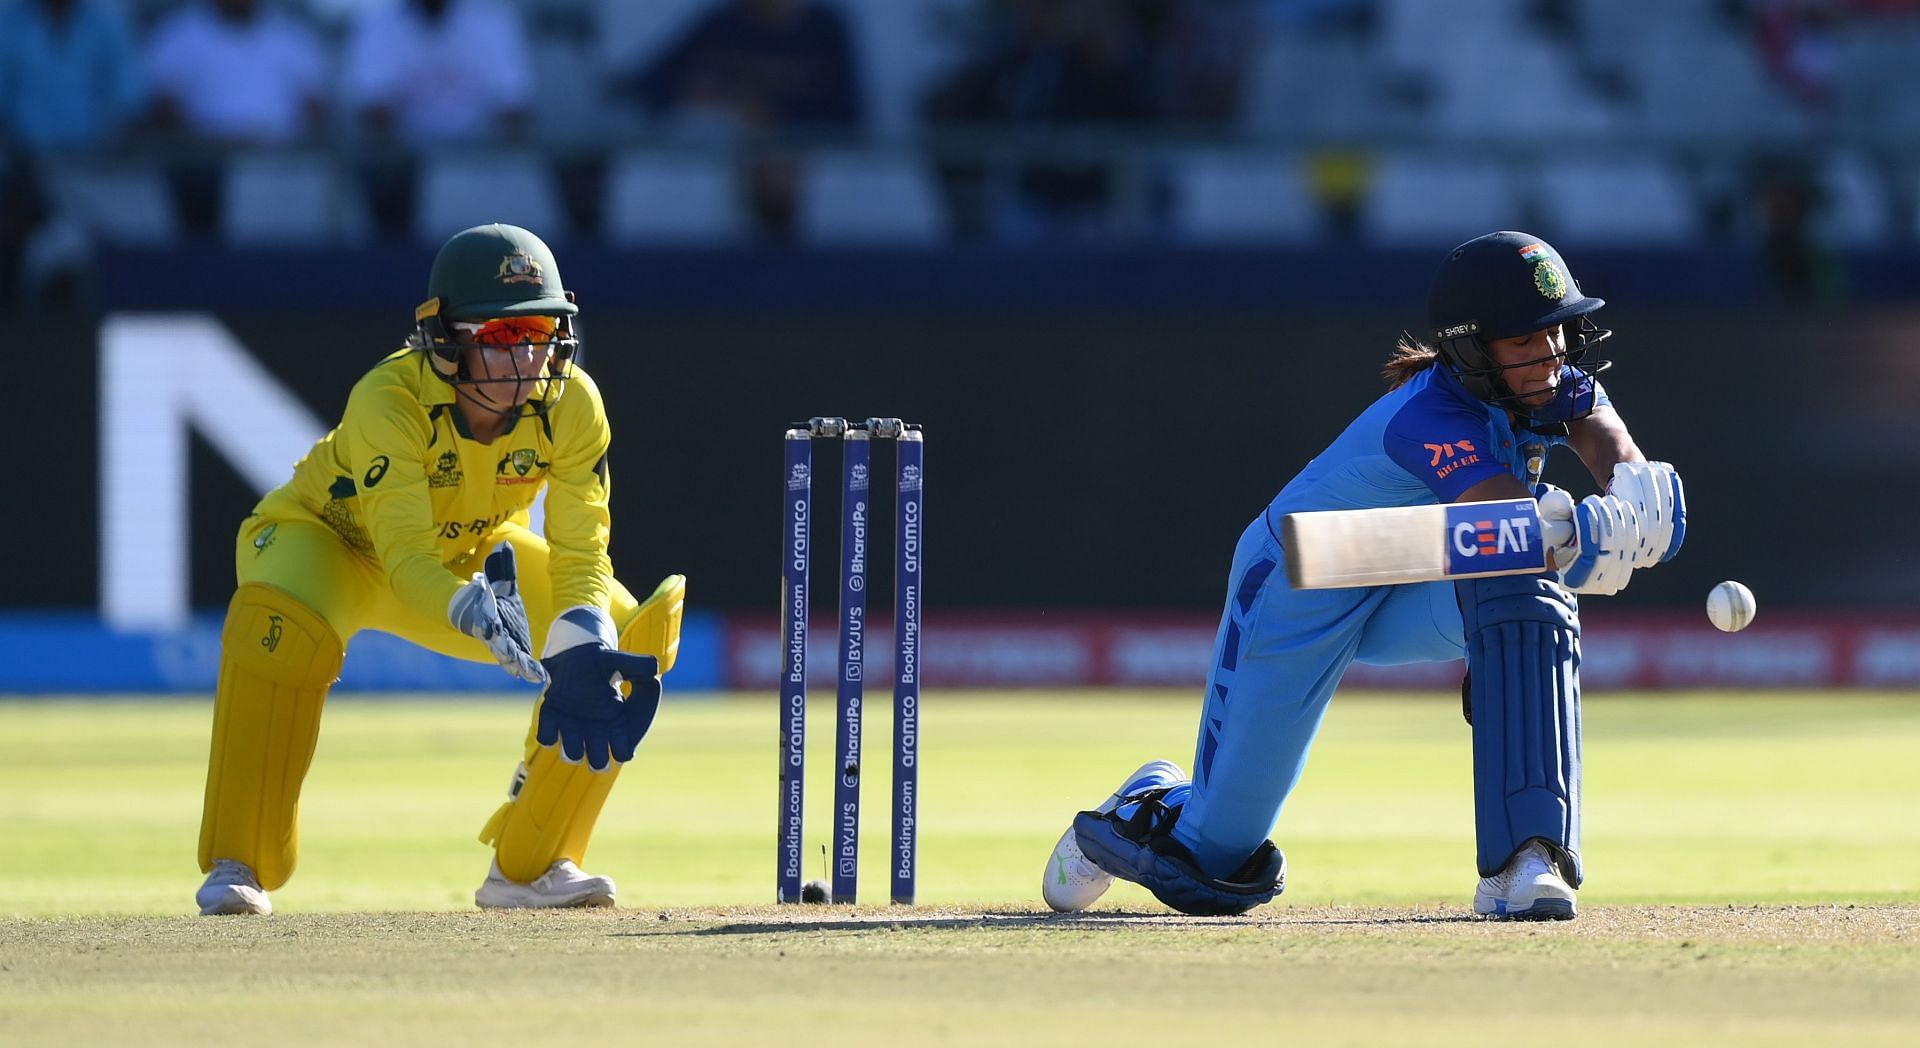 Australia v India - ICC Women